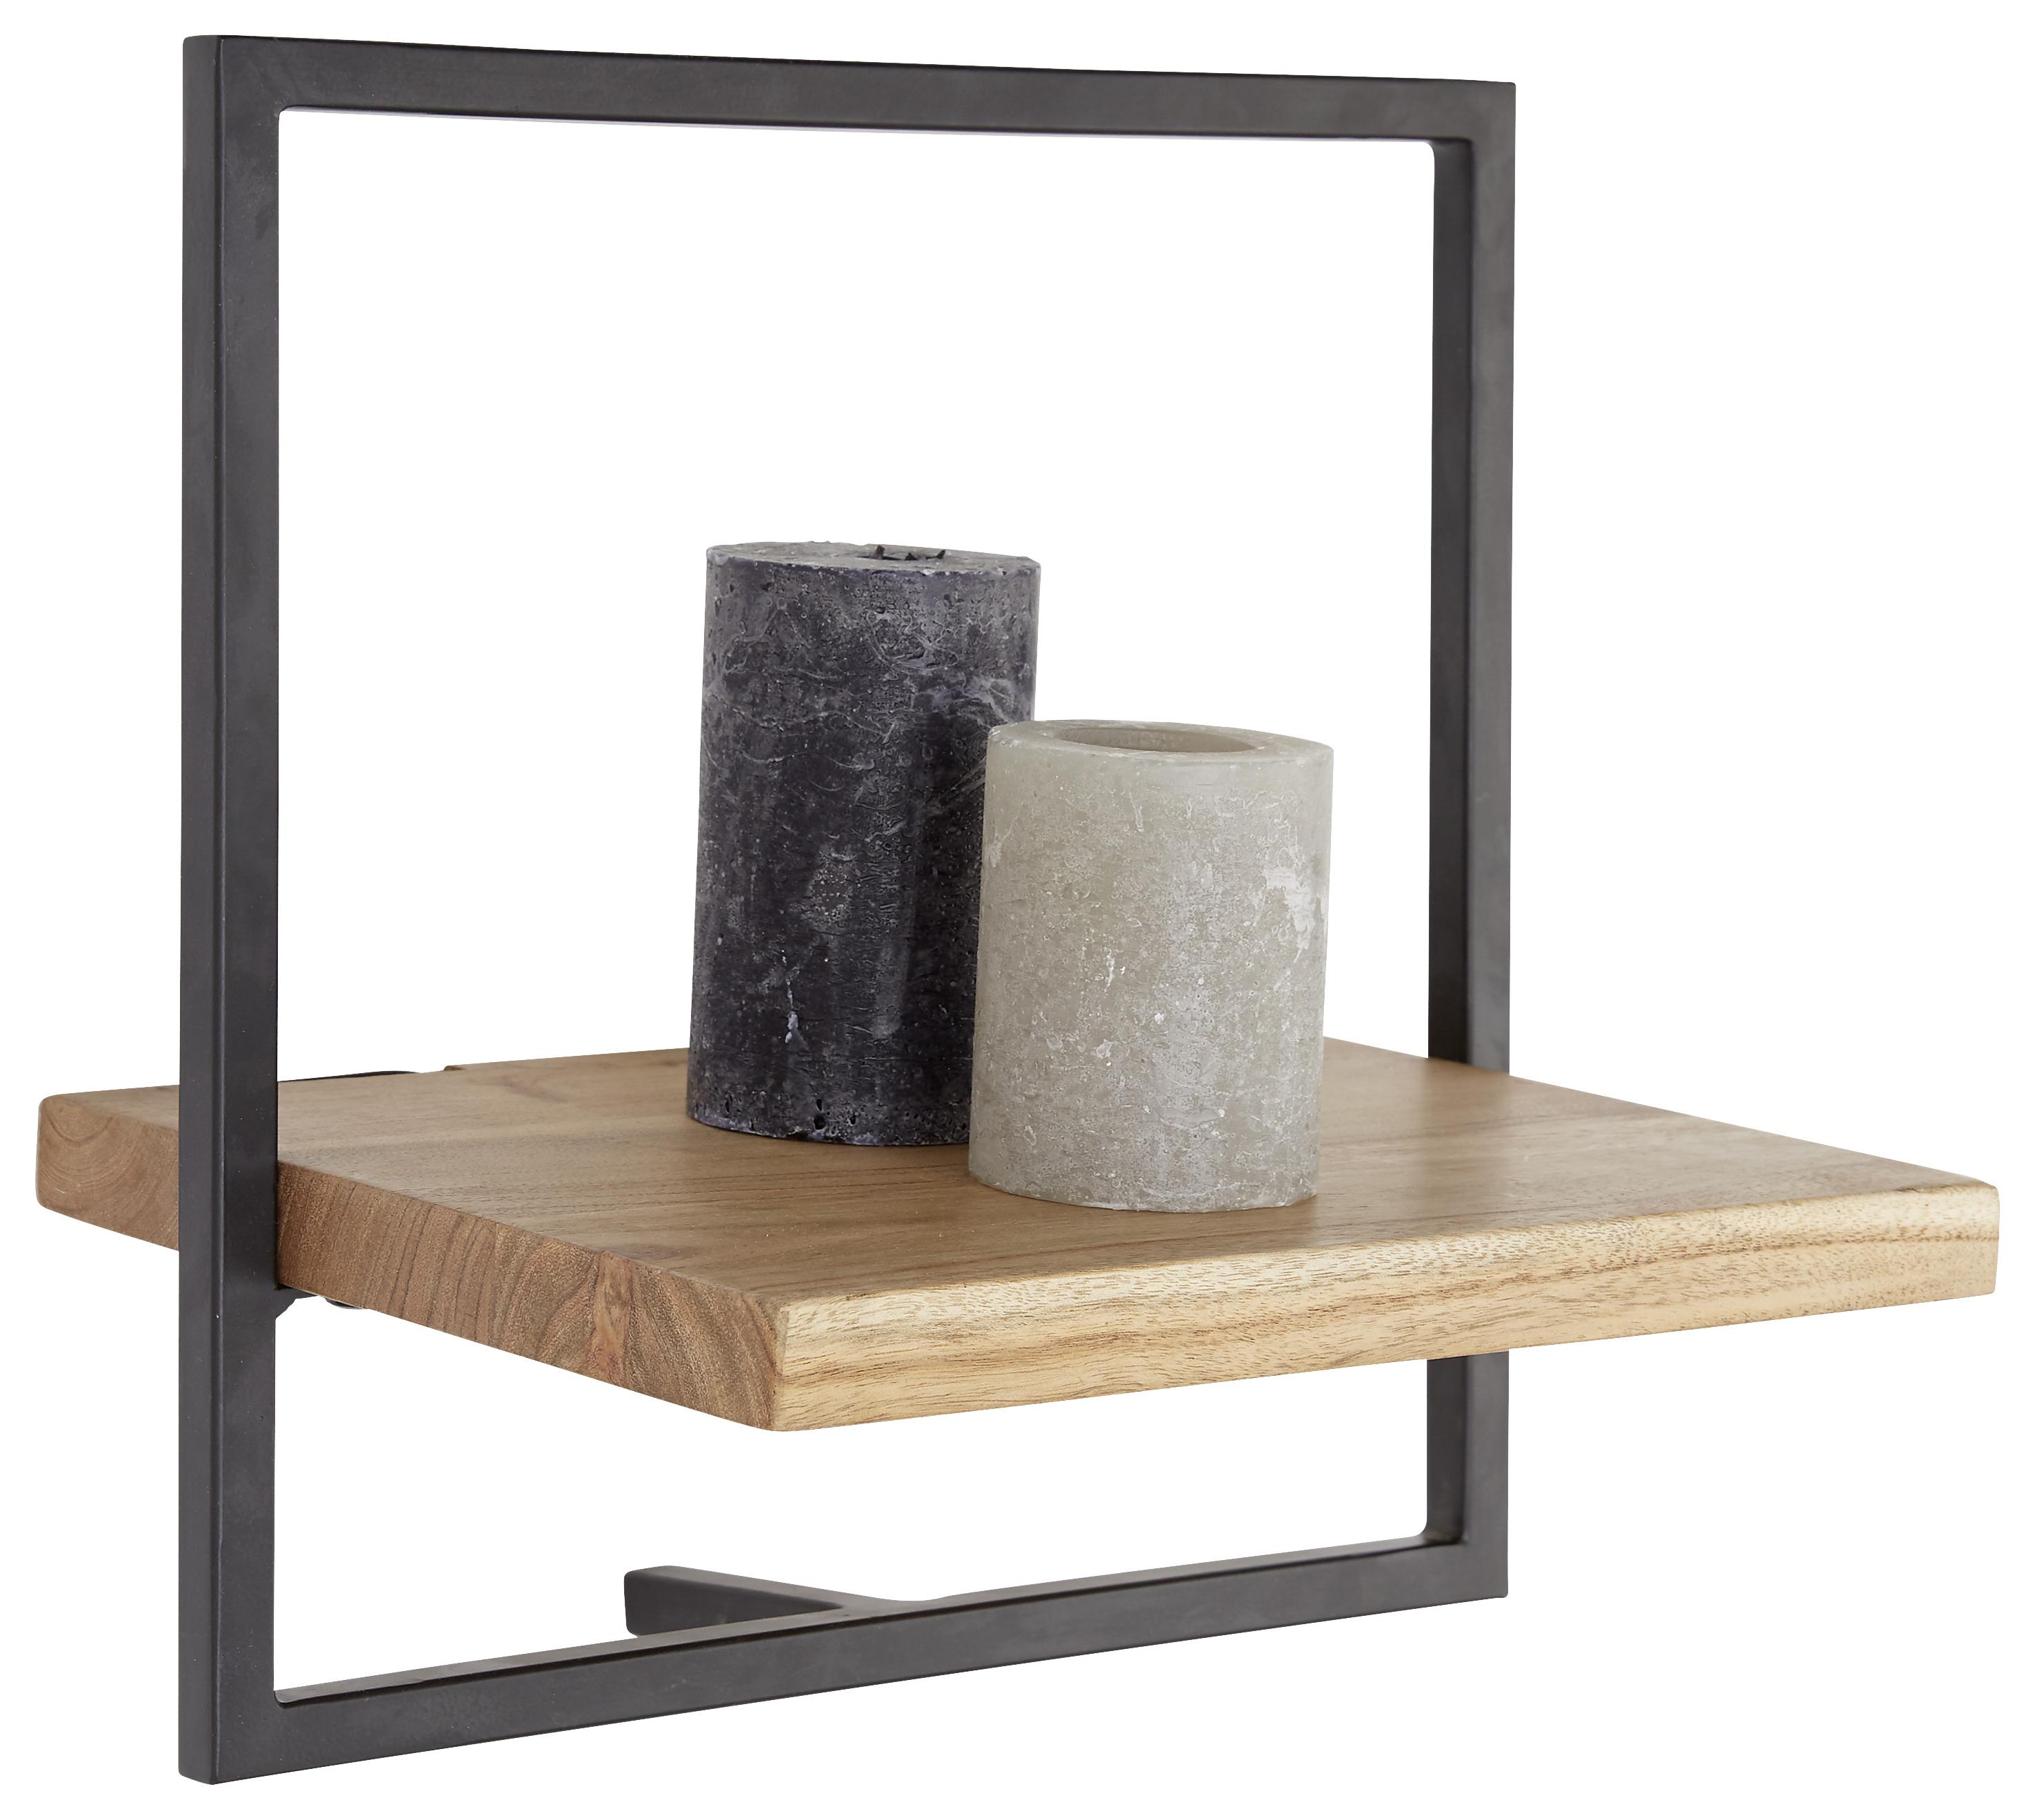 Nástěnný Regál Alia -Sb- - černá/barvy akácie, Moderní, kov/dřevo (35/35/25cm) - Modern Living